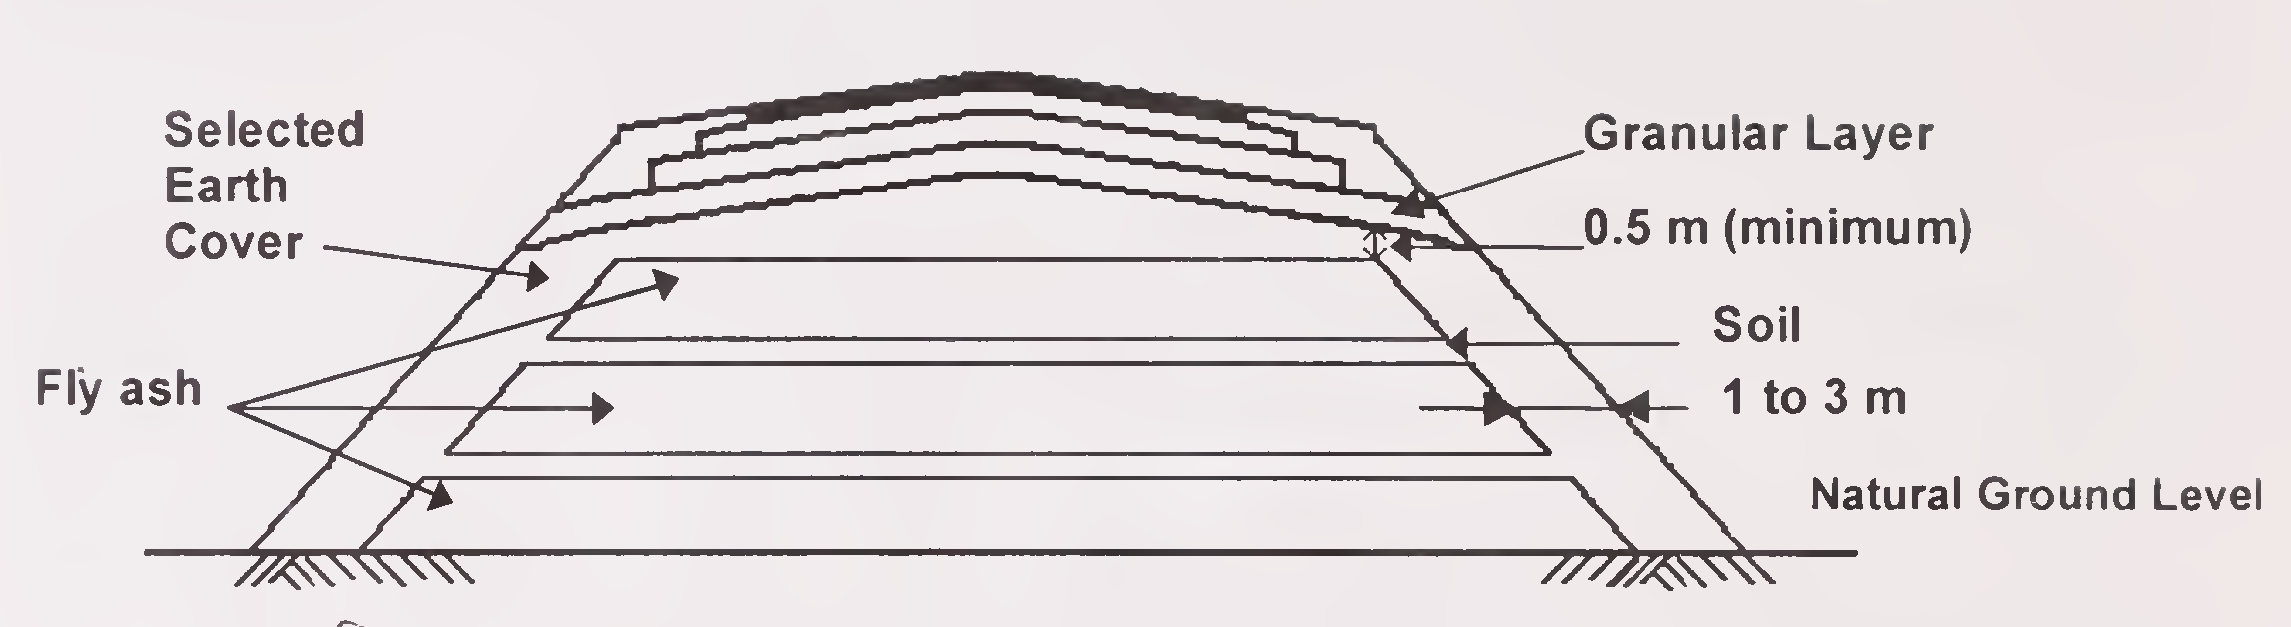 ಅಂಜೂರ I. ಫ್ಲೈ ಬೂದಿ ಮತ್ತು ಮಣ್ಣಿನ ಪರ್ಯಾಯ ಪದರದೊಂದಿಗೆ ಒಡ್ಡುಗಳ ವಿಶಿಷ್ಟ ಅಡ್ಡ-ವಿಭಾಗ